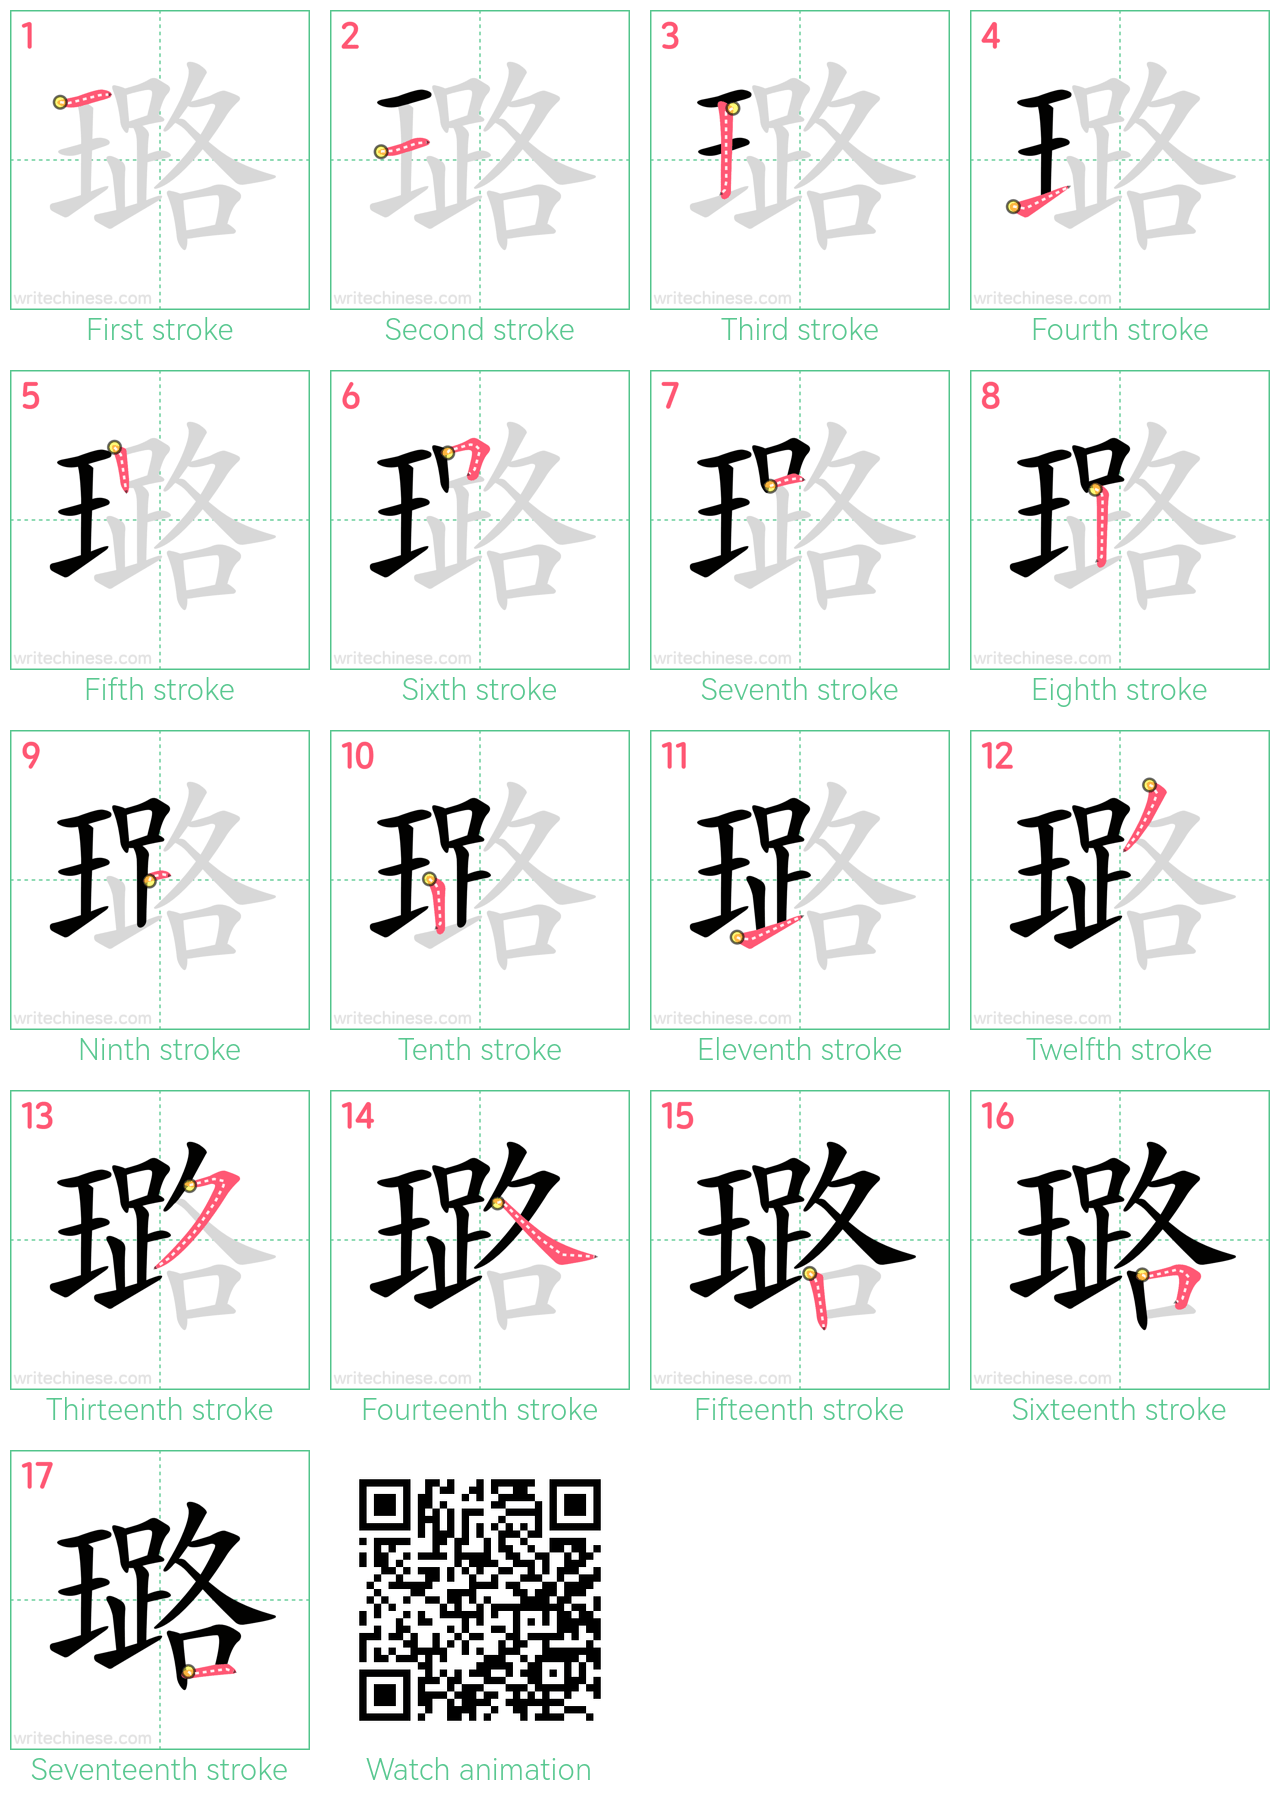 璐 step-by-step stroke order diagrams